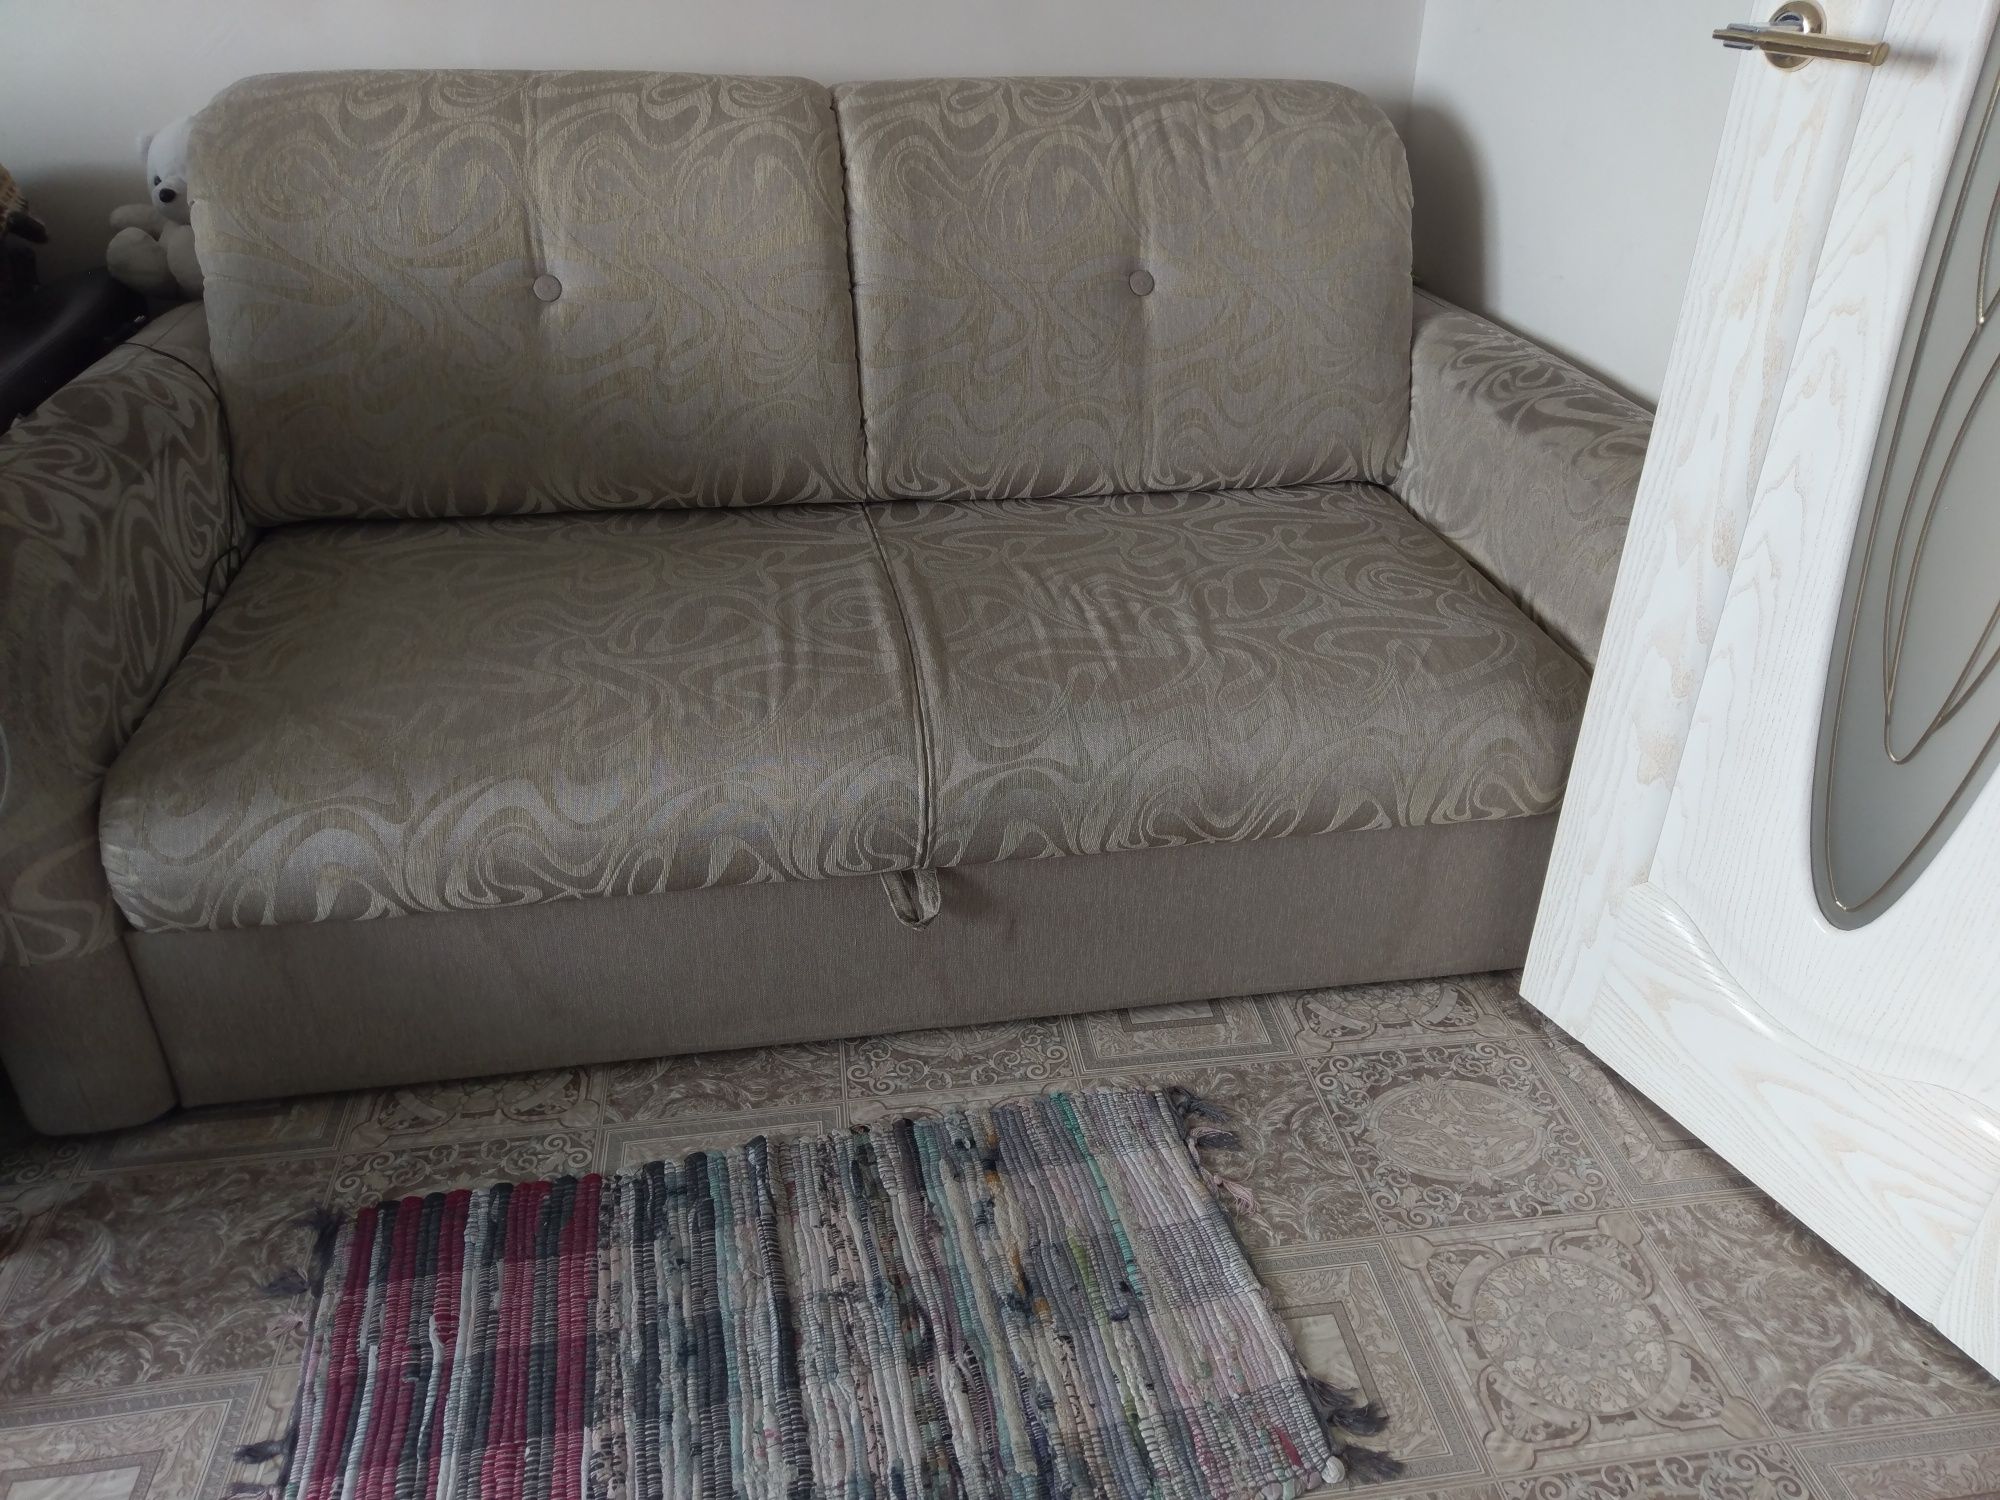 Продам раздвижной диван, производство Тюмень в нормальном состоянии